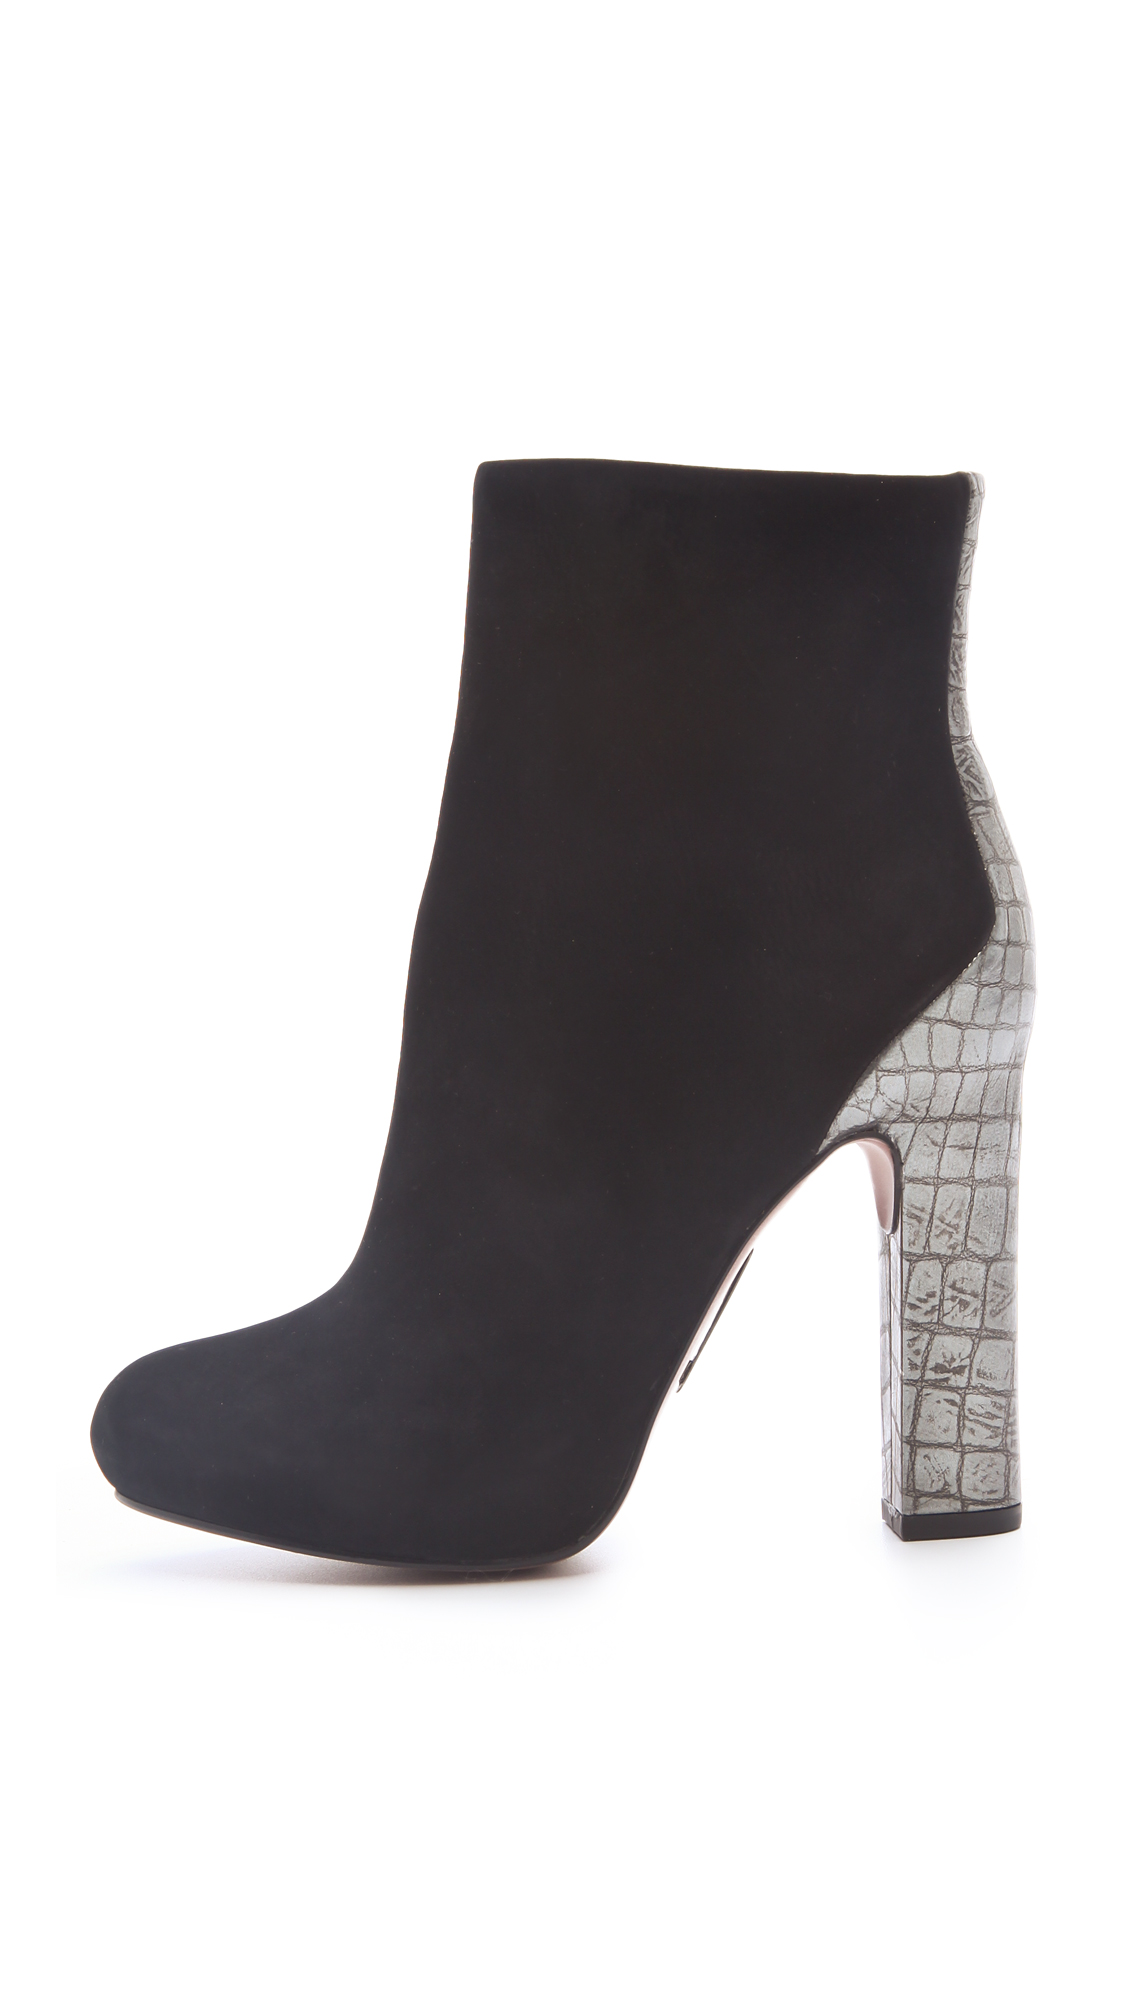 Lyst - Boutique 9 Tana High Heel Booties in Black